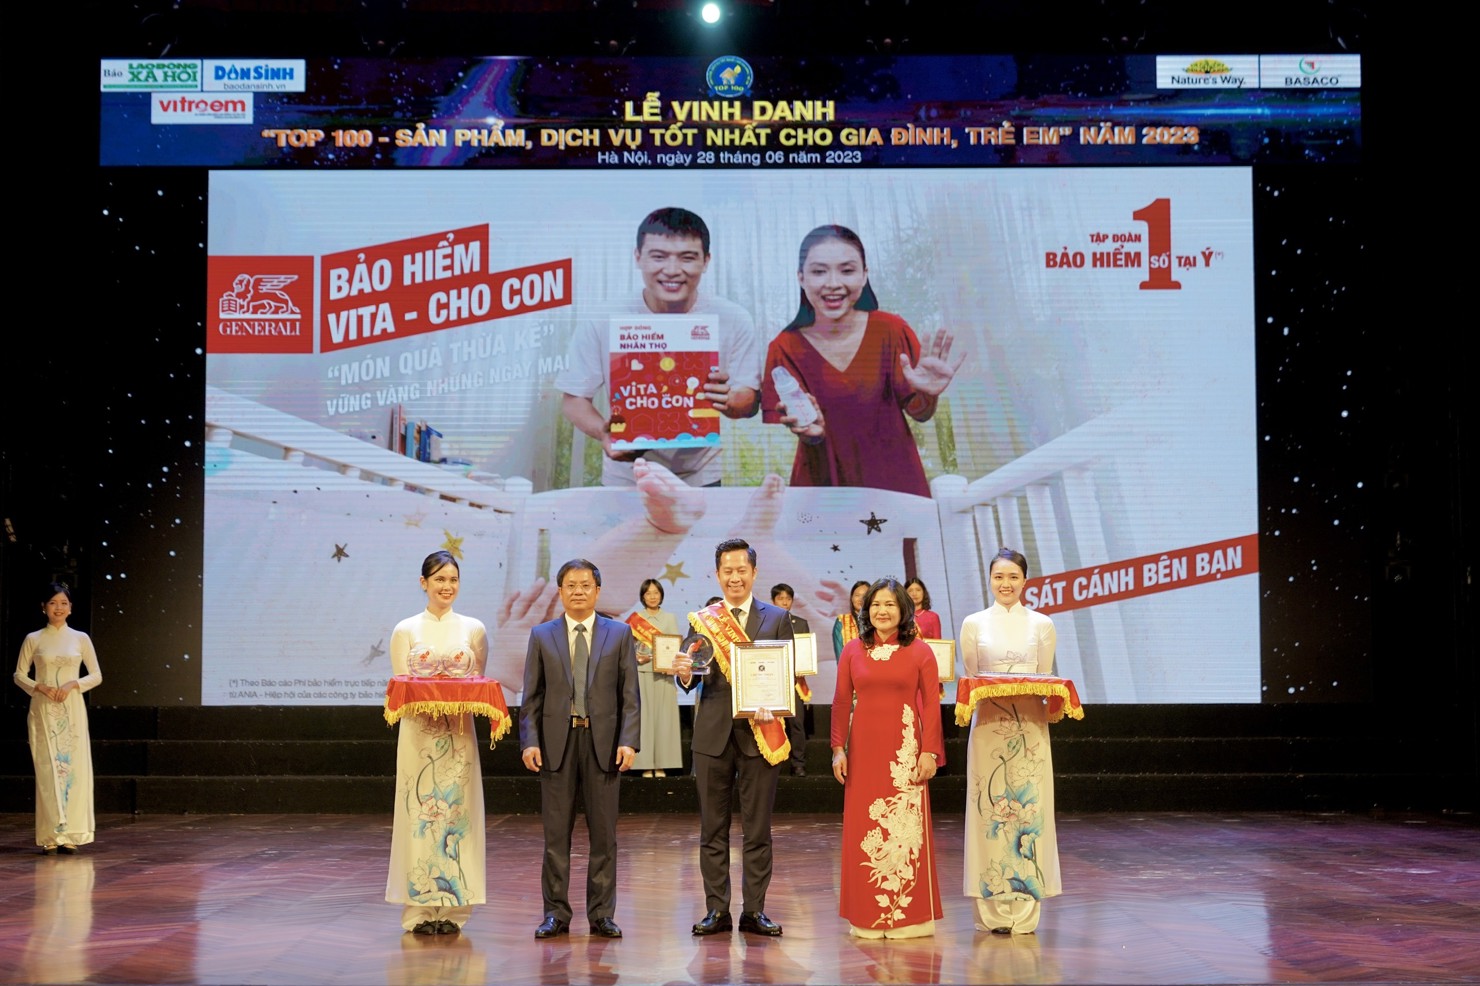 Đại diện Generali Việt Nam nhận giải thưởng “Top 100 sản phẩm dịch vụ tốt nhất cho gia đình và trẻ em”.